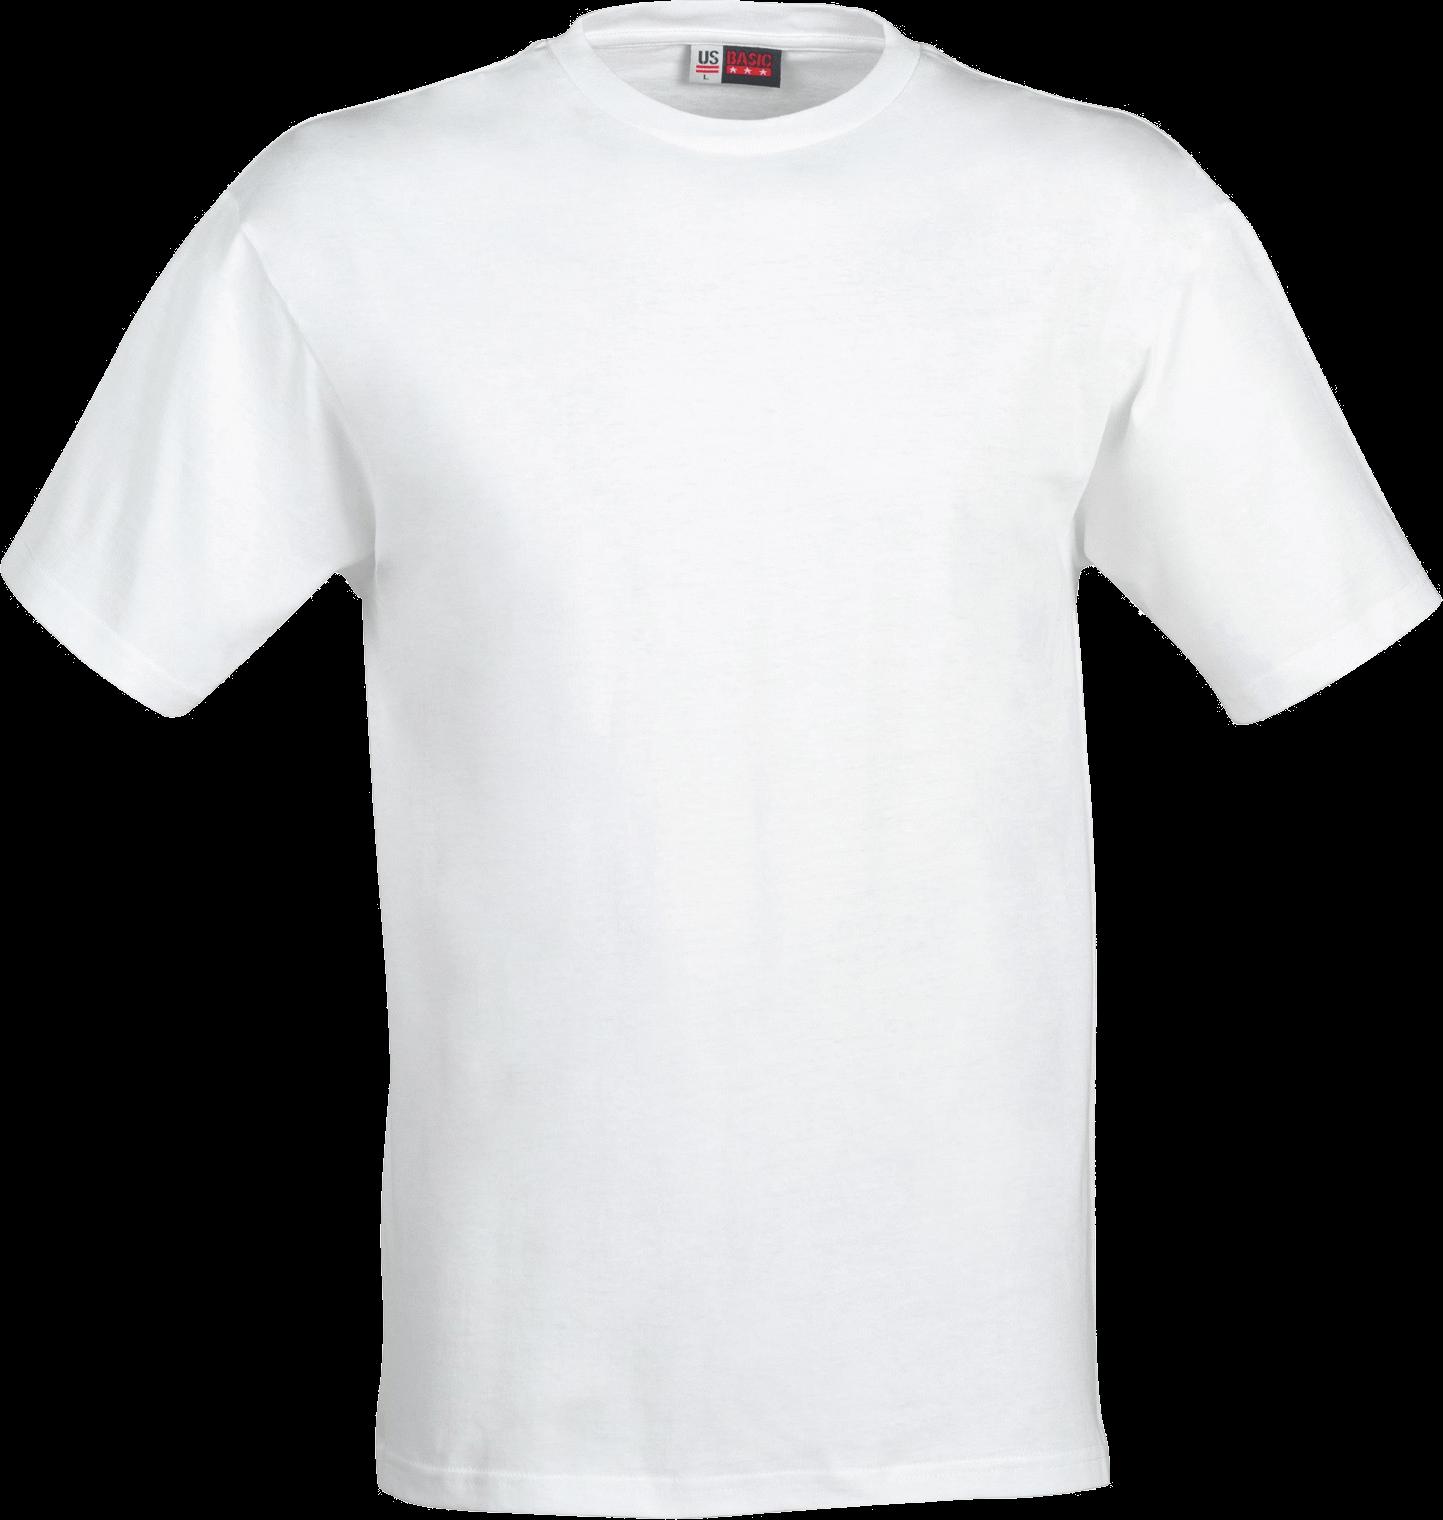 Download White T-Shirt Png Image HQ PNG Image FreePNGImg | vlr.eng.br